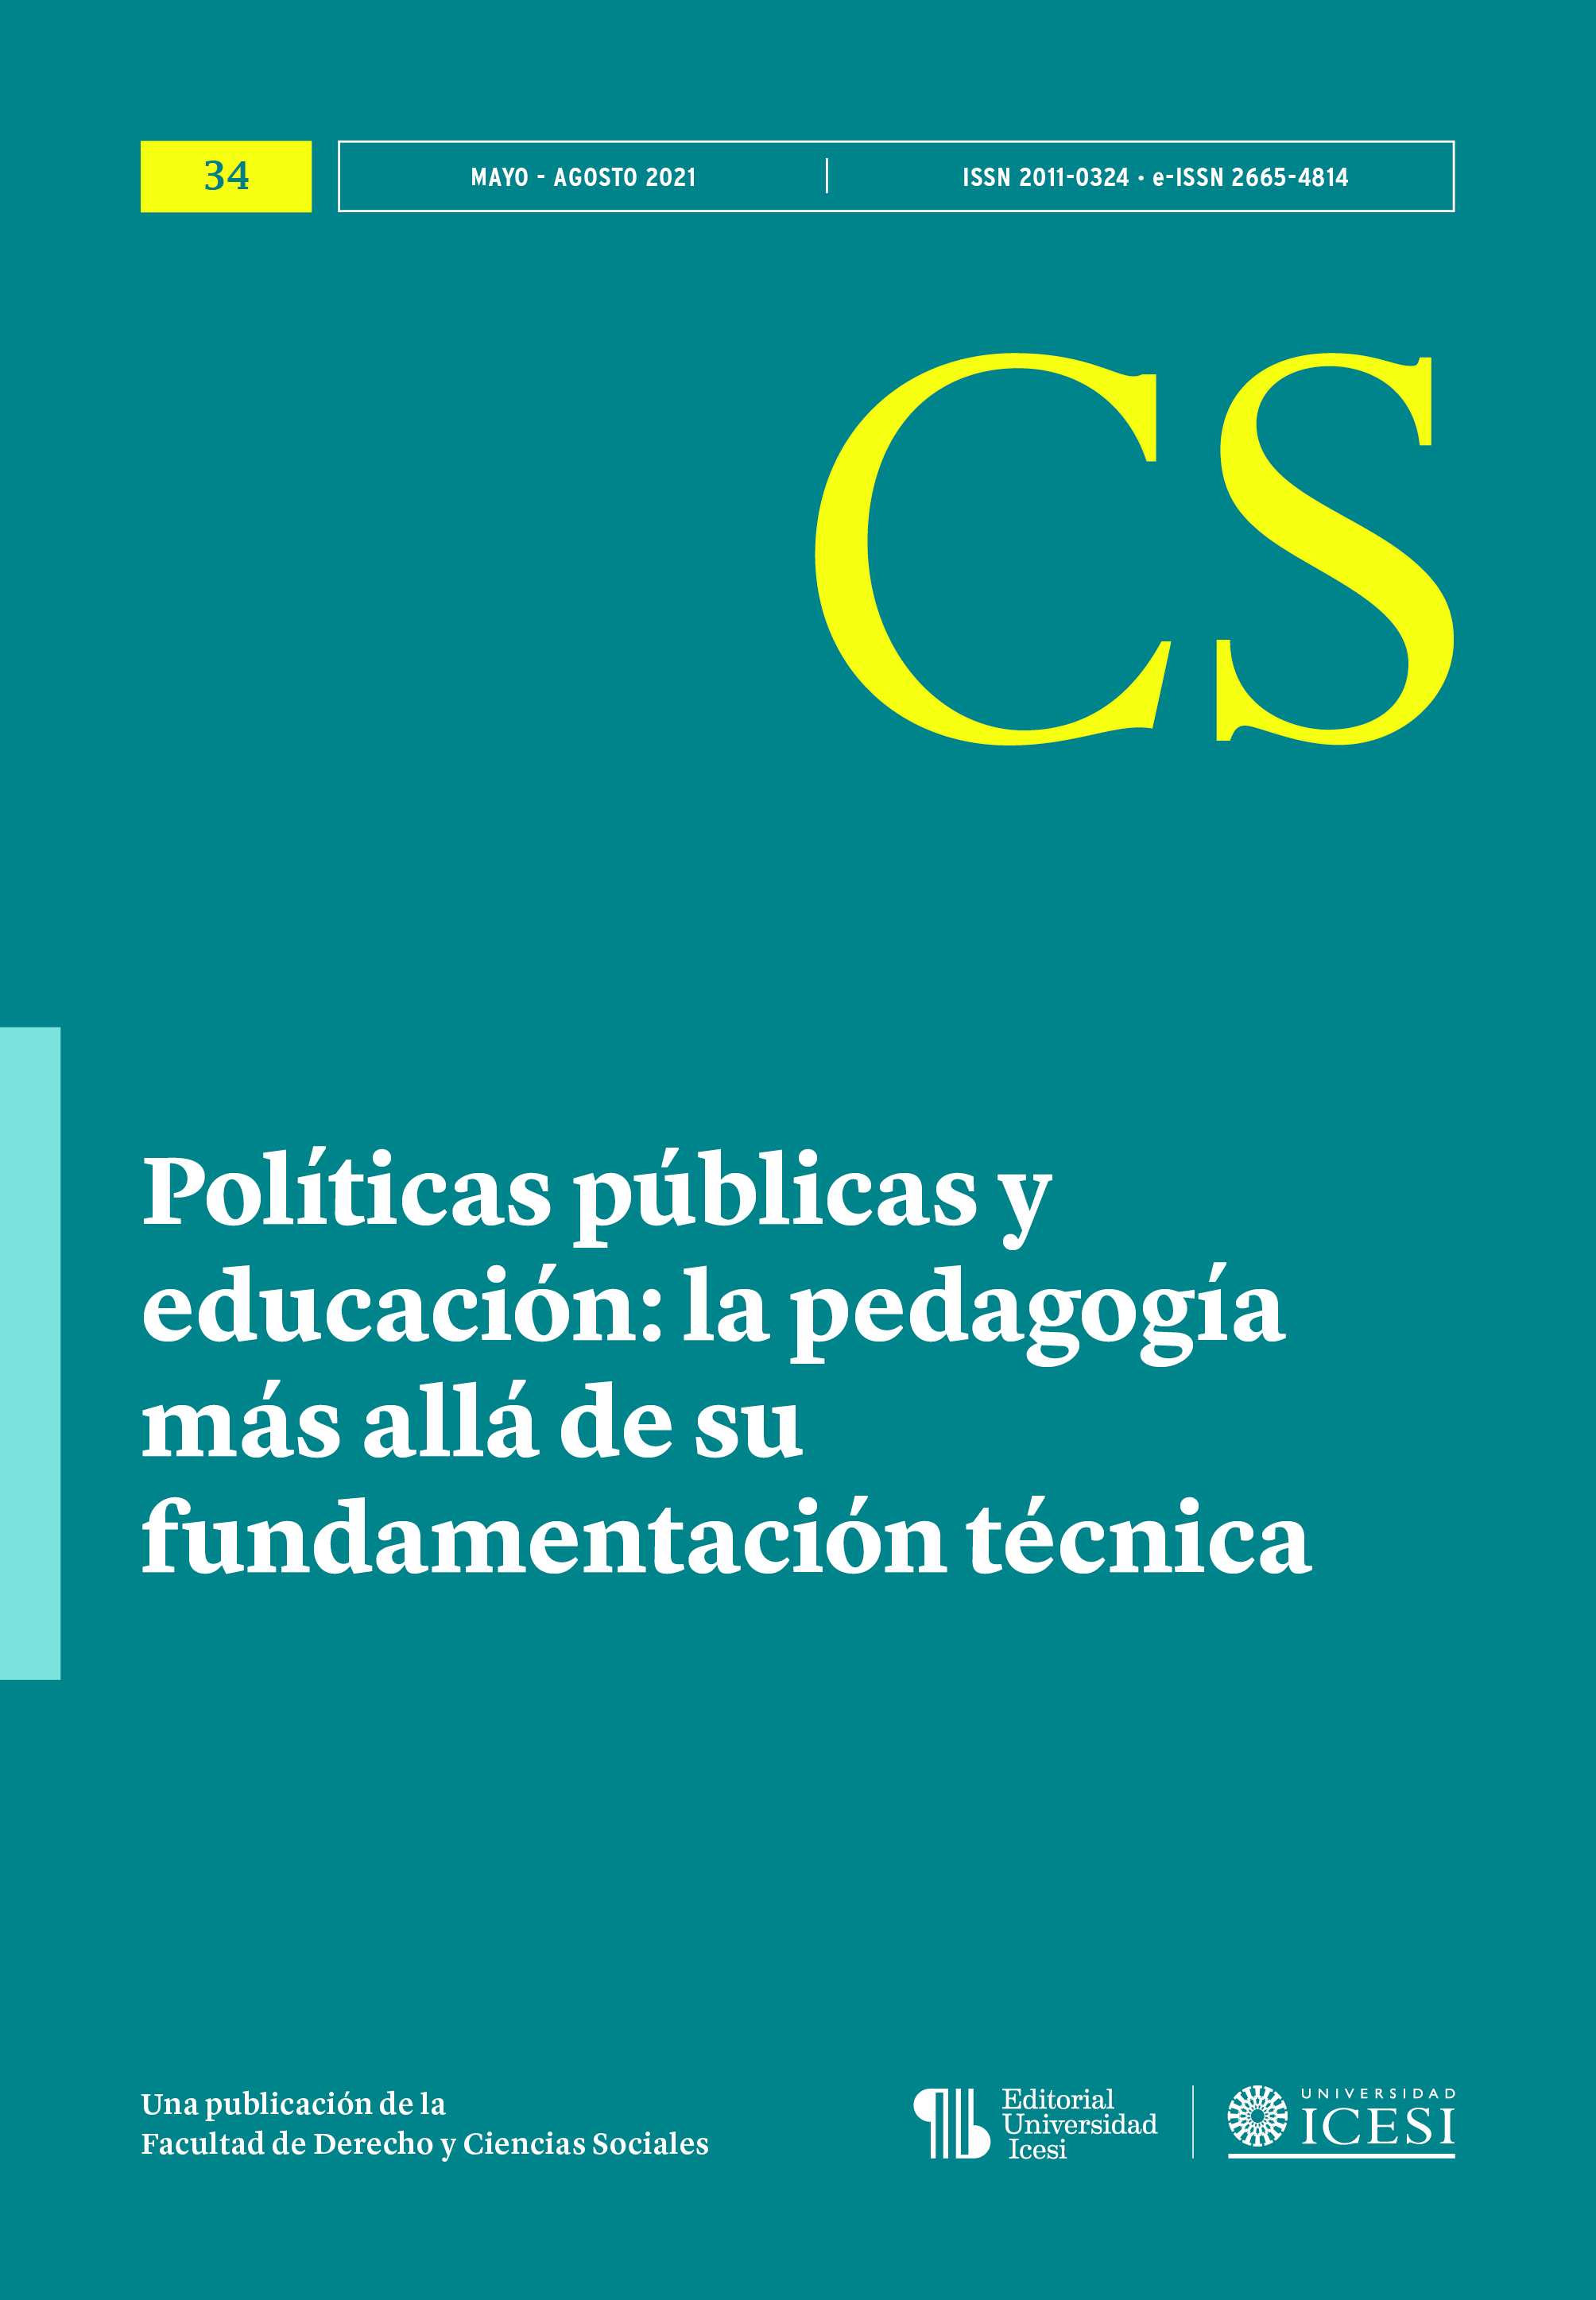 					View No. 34 (2021): No. 34, Mayo-Agosto (2021): Políticas públicas y educación: la pedagogía más allá de su fundamentación técnica
				